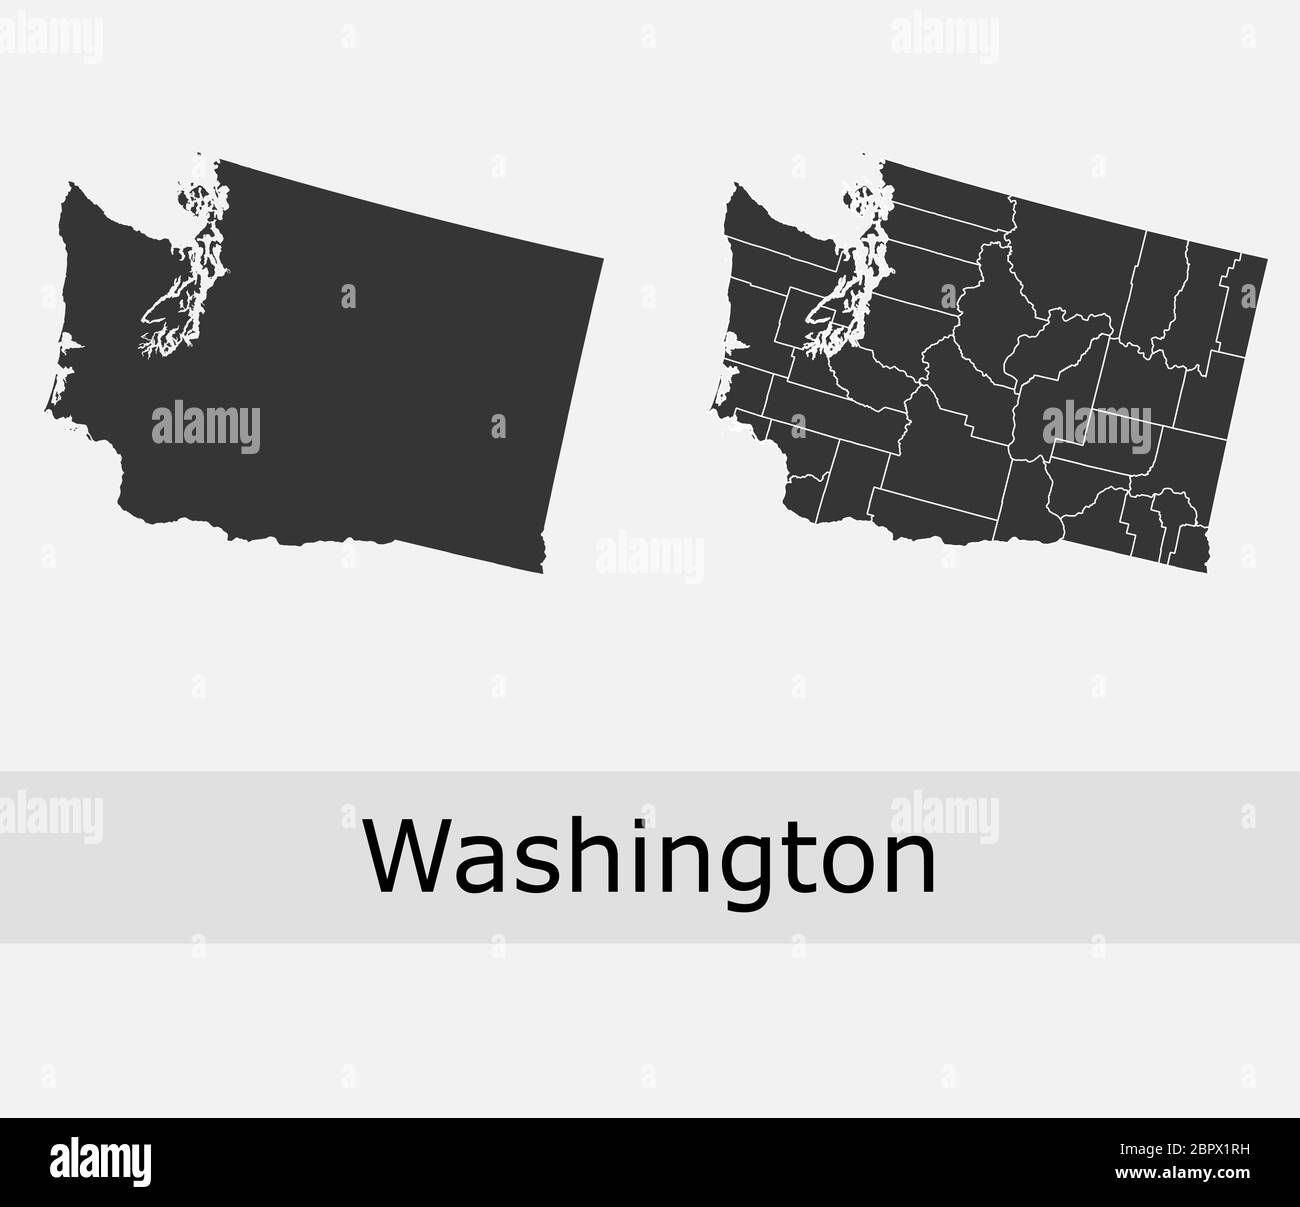 Washington cartes vectorielles comtés, cantons, régions, municipalités, départements, frontières Illustration de Vecteur